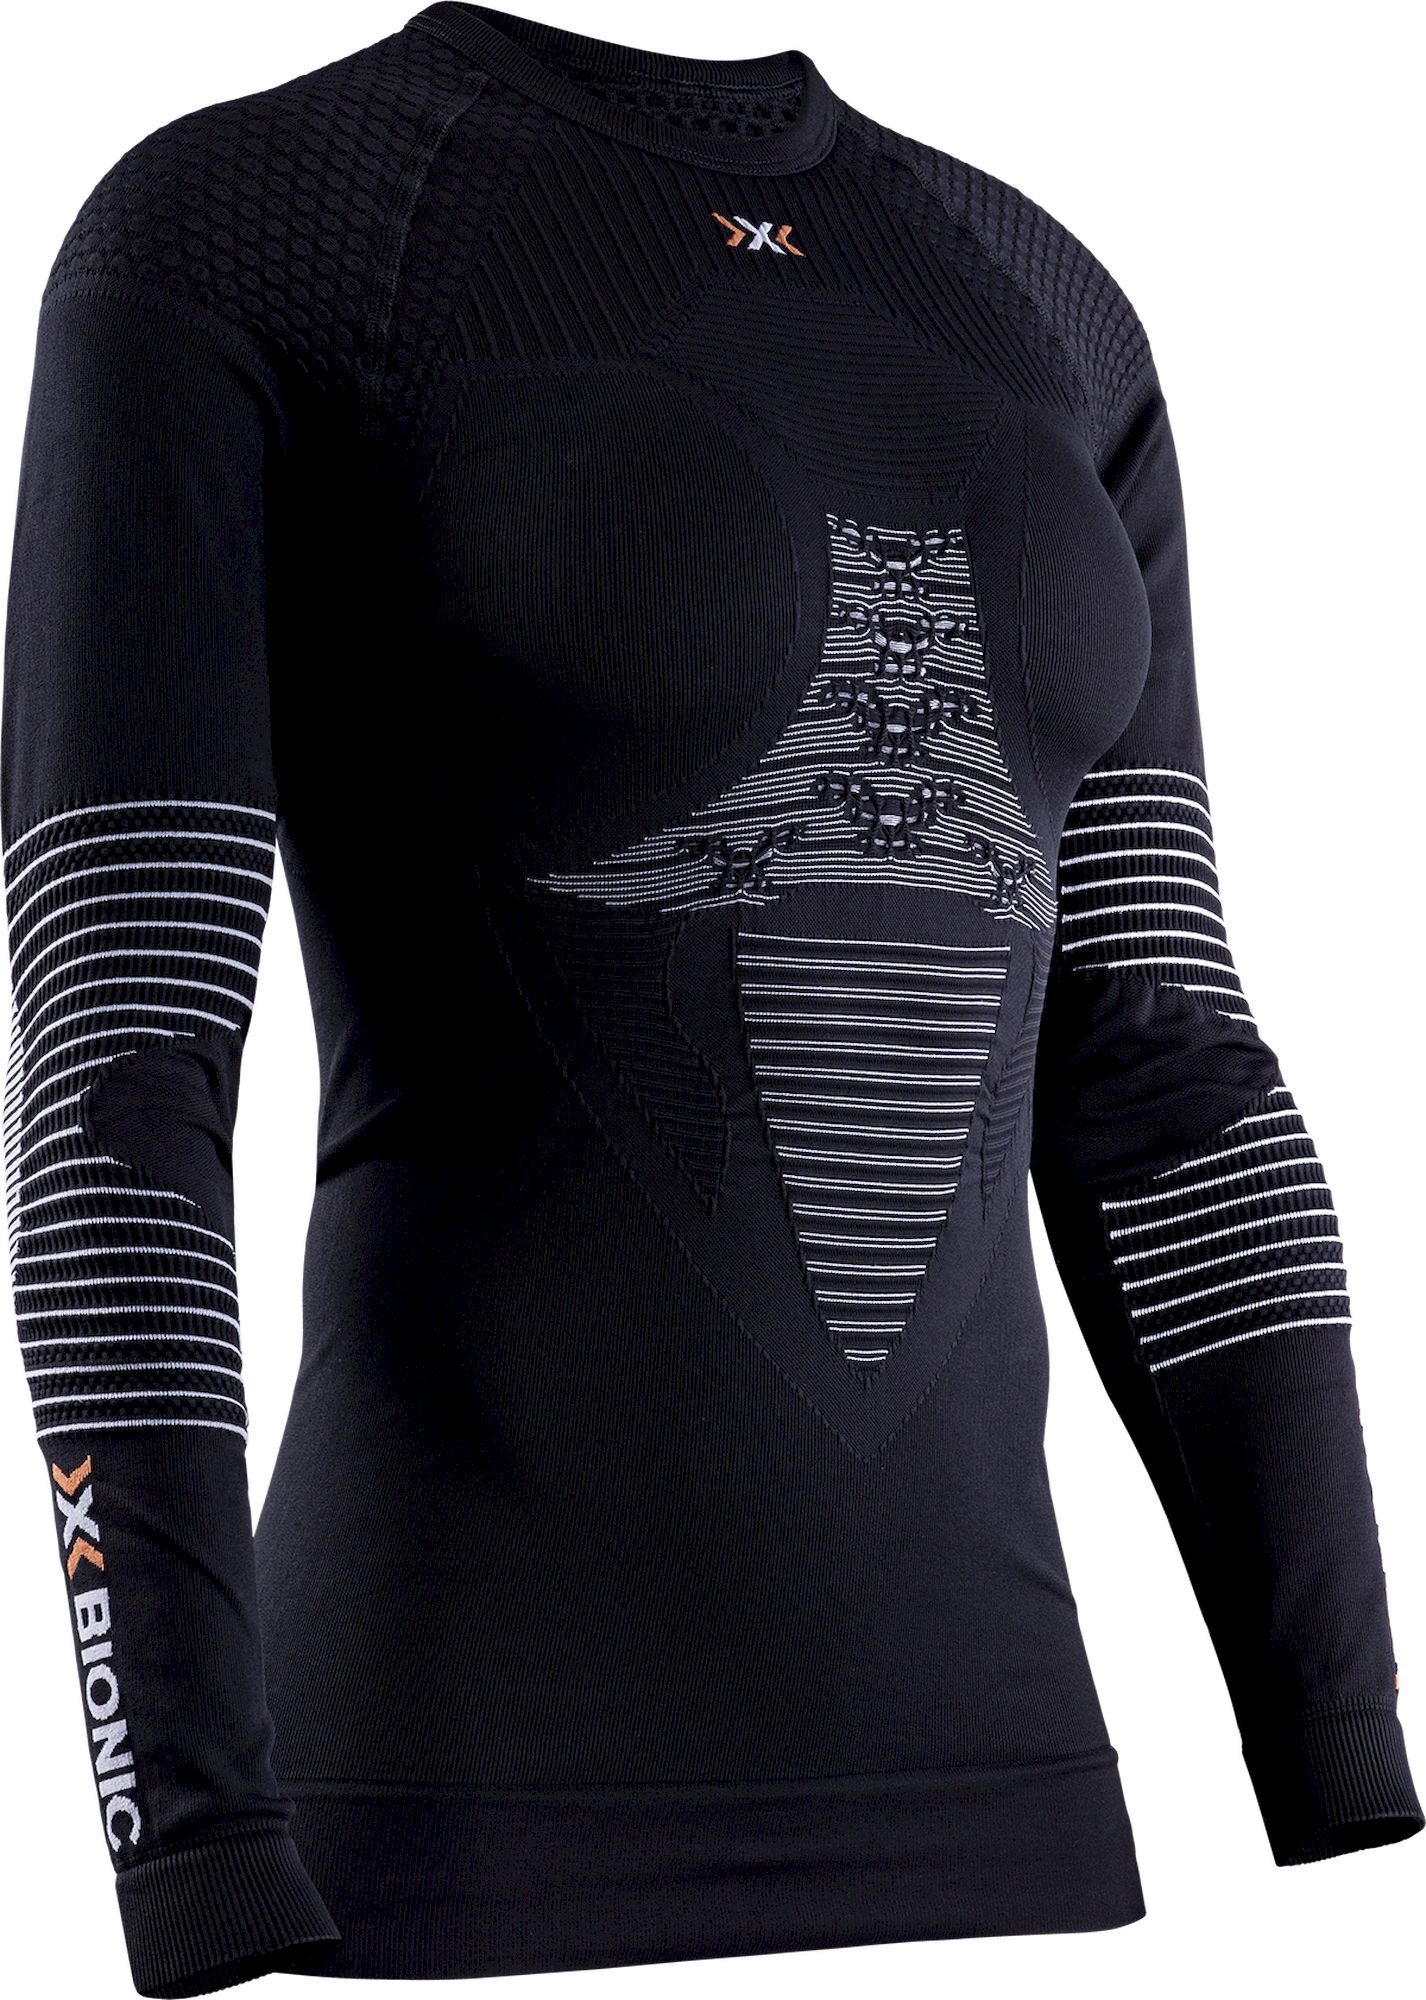 X-Bionic Energizer 4.0 Shirt Long Sleeve - Base layer - Women's